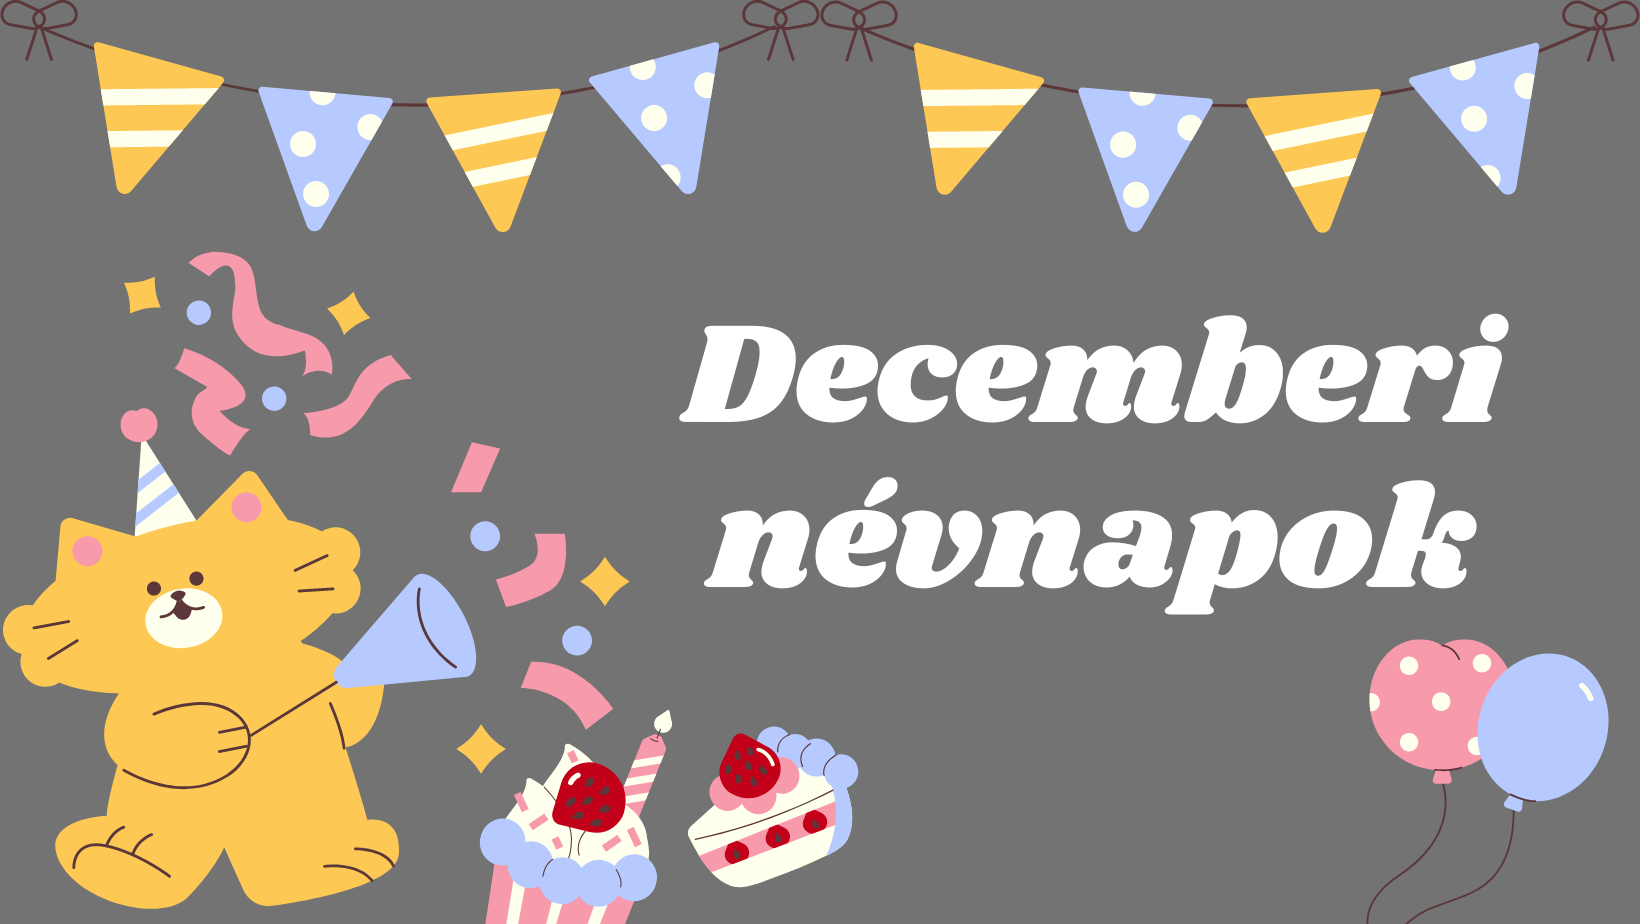 Decemberi névnapok: Milyen névnapok vannak decemberben? című cikk borítóképe